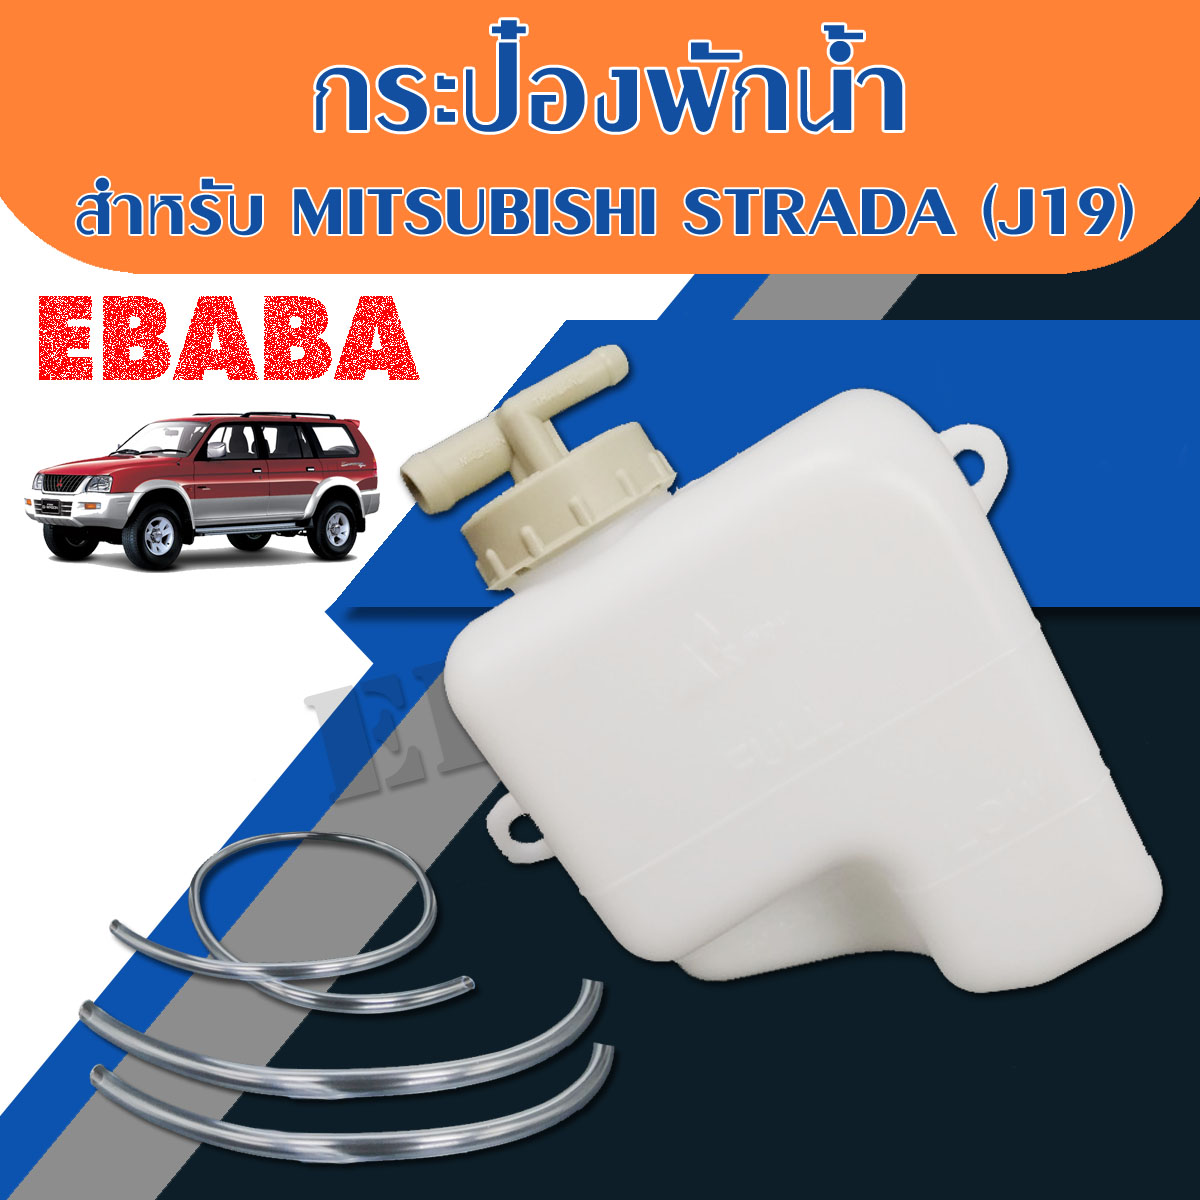 กระป๋องพักน้ำ สำหรับ MITSUBISHI STRADA รหัสสินค้า : J19